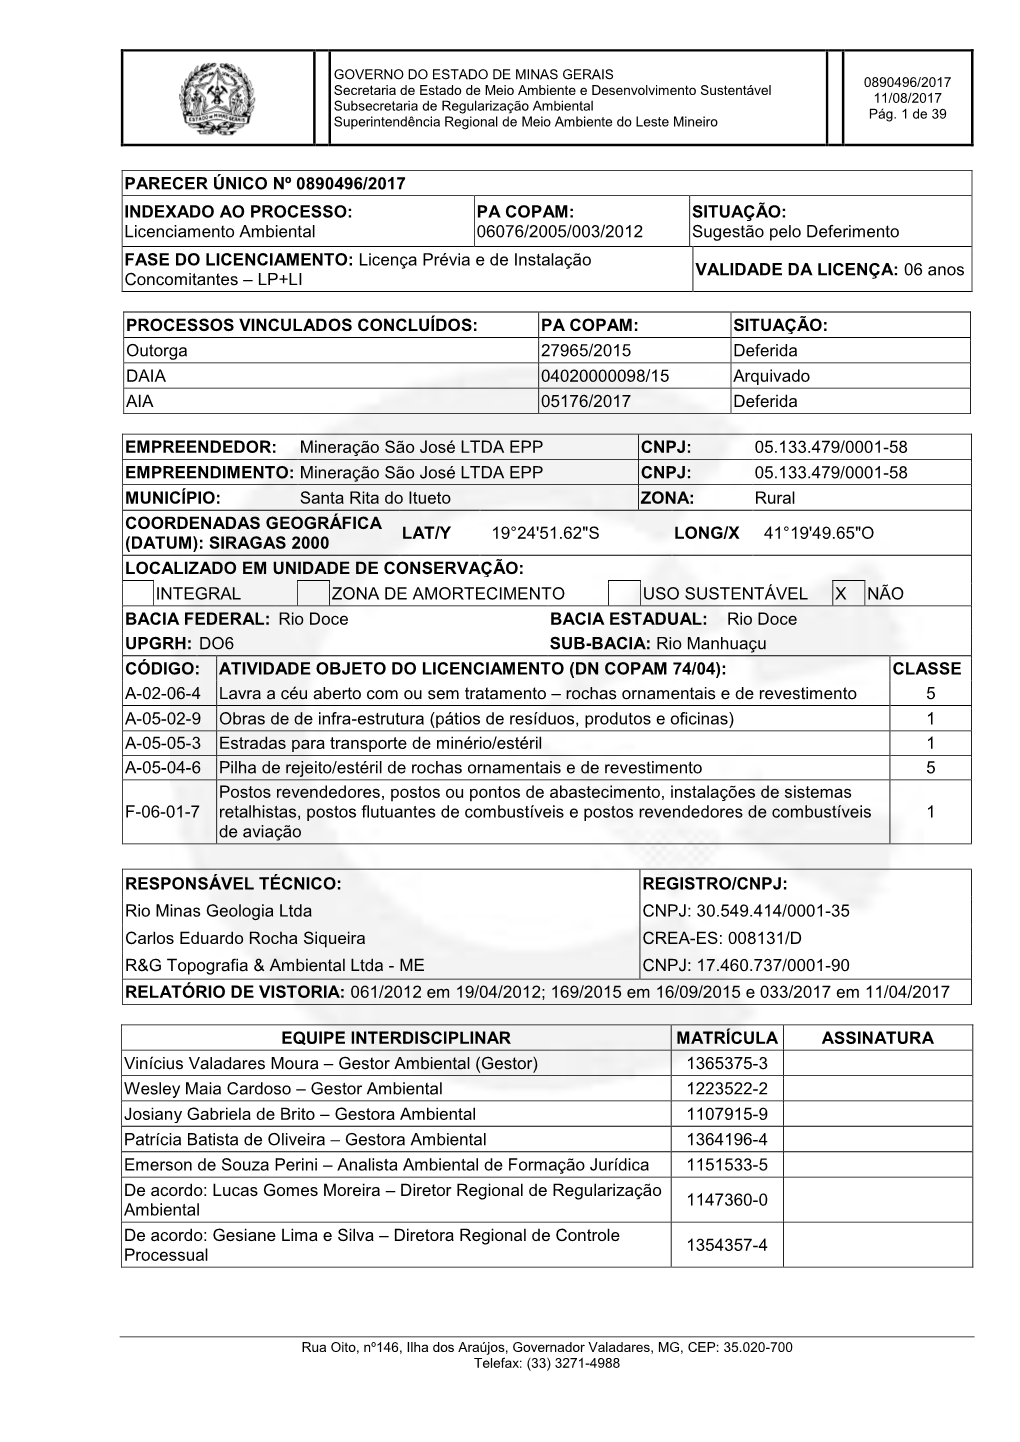 Licenciamento Ambiental PA COPAM: 06076/2005/003